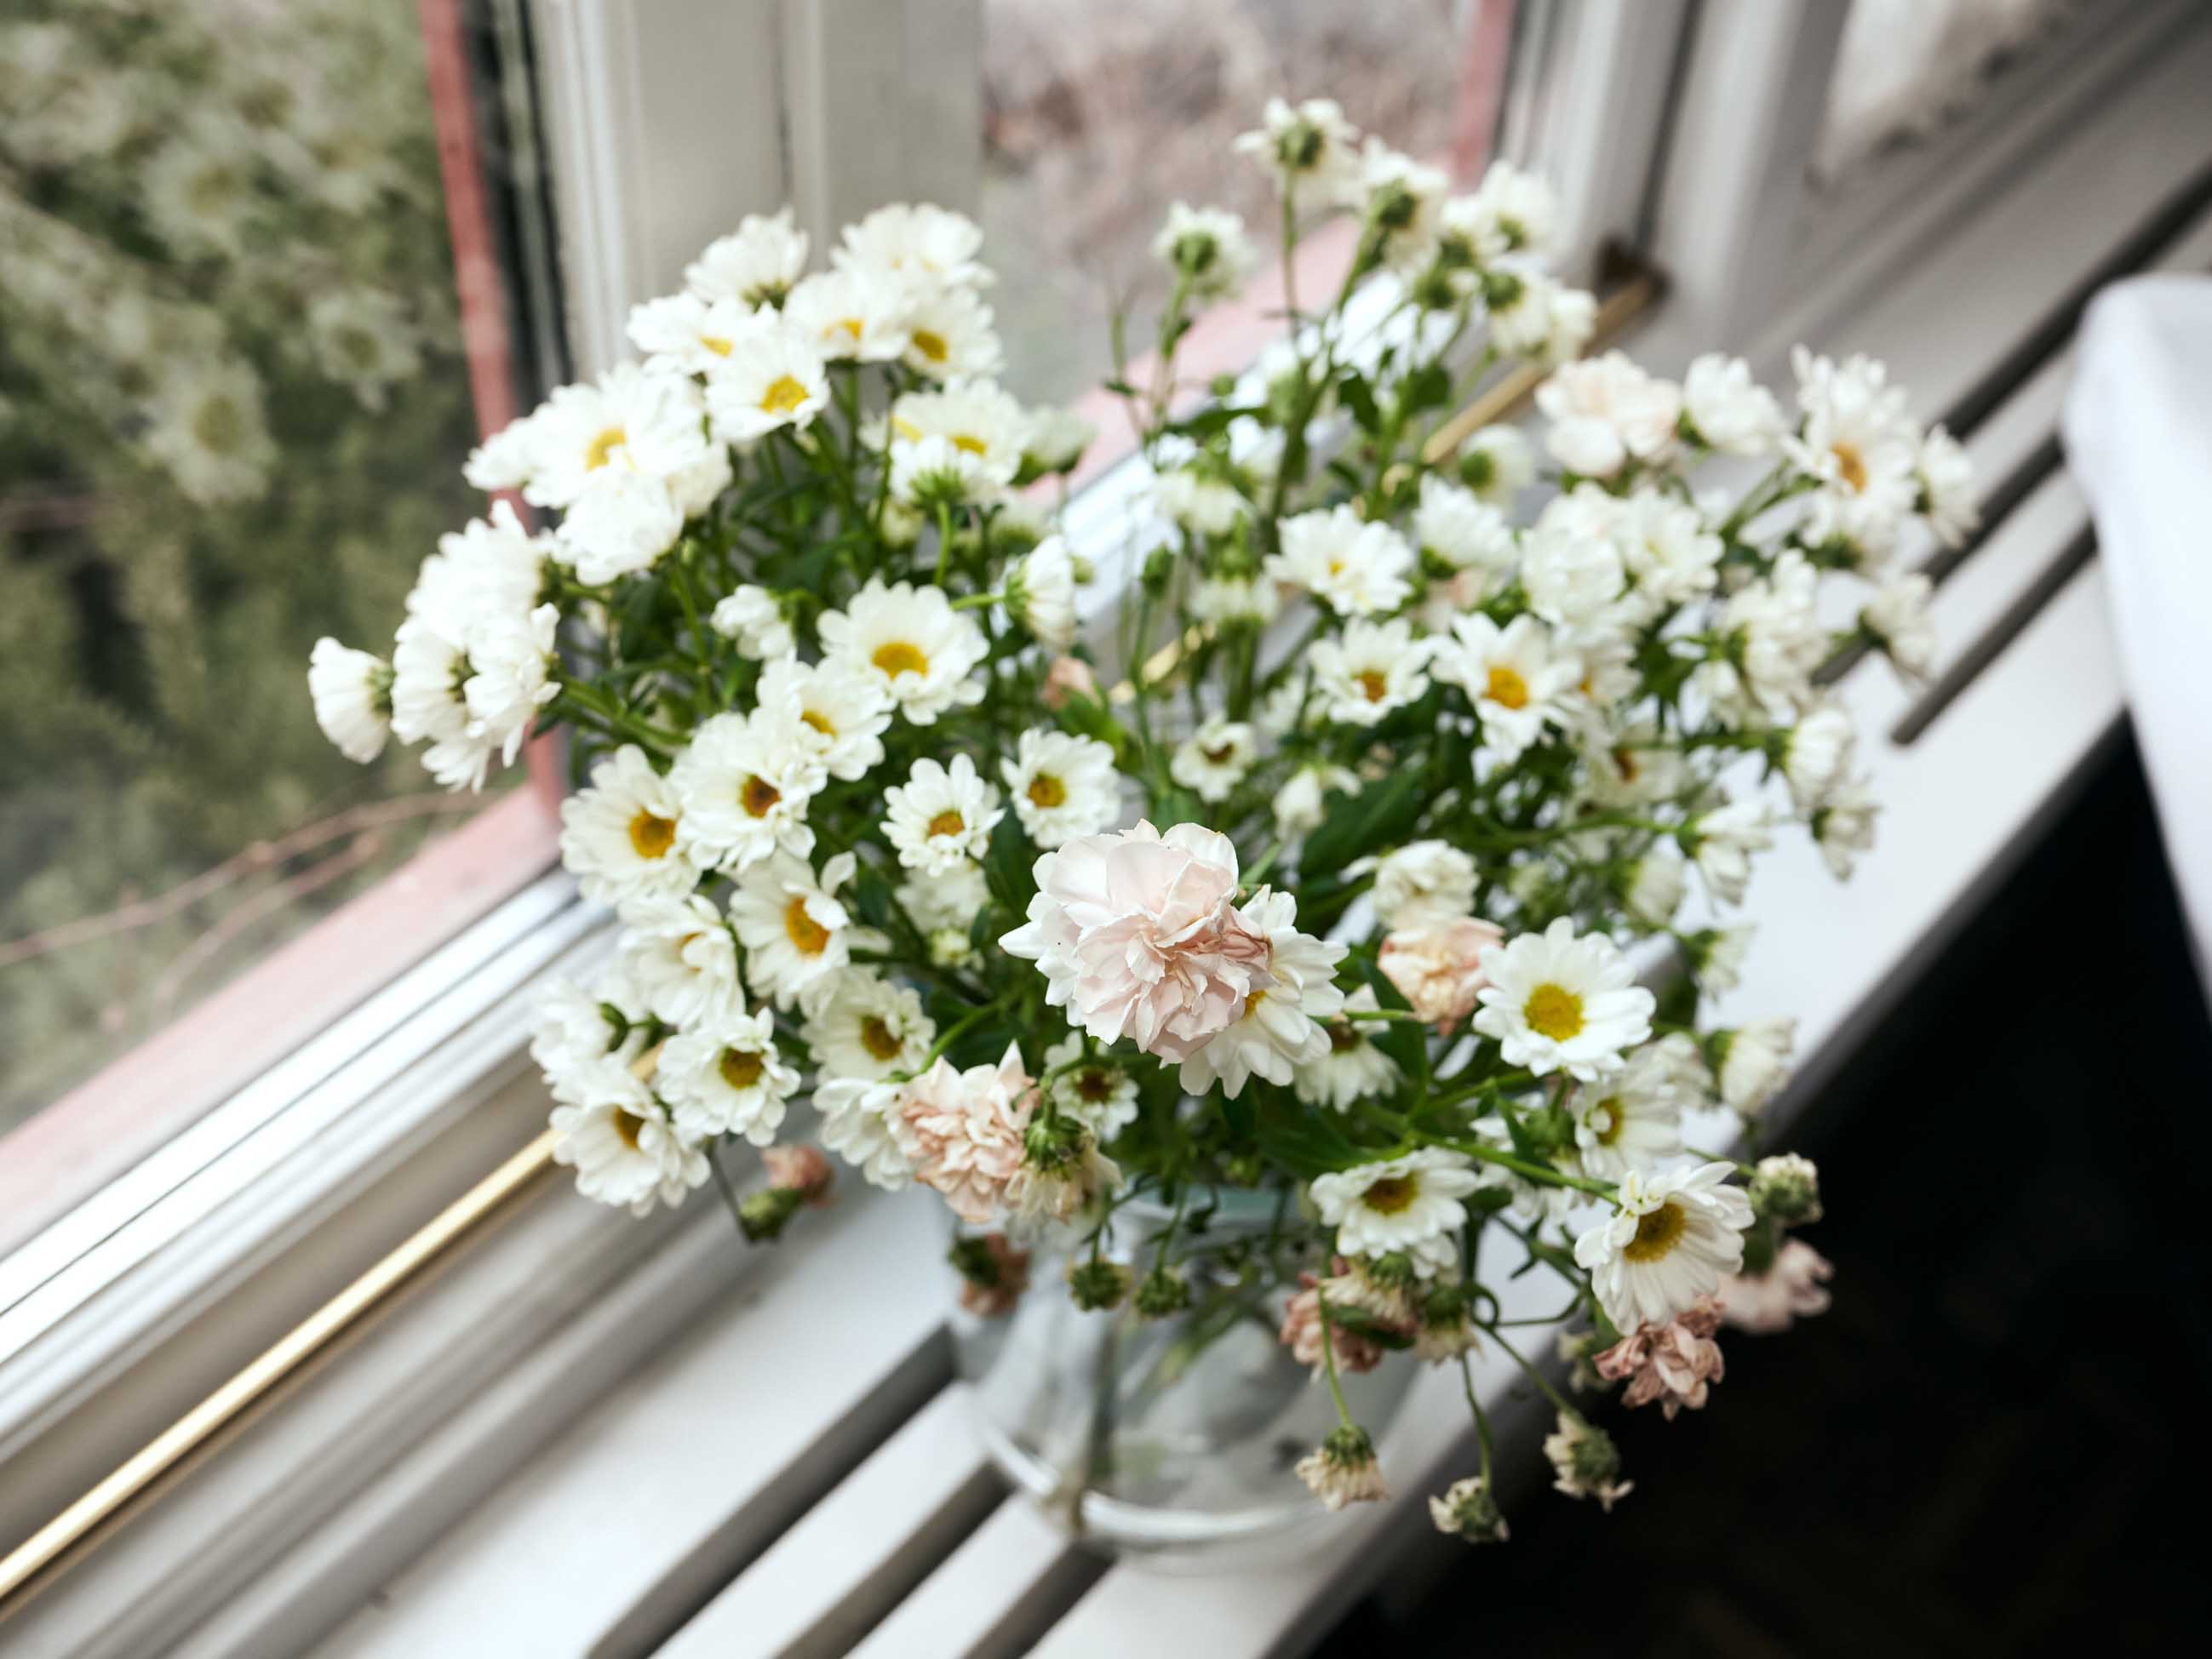 Blommor i fönster, prästkragar, midsommar och midsommarafton